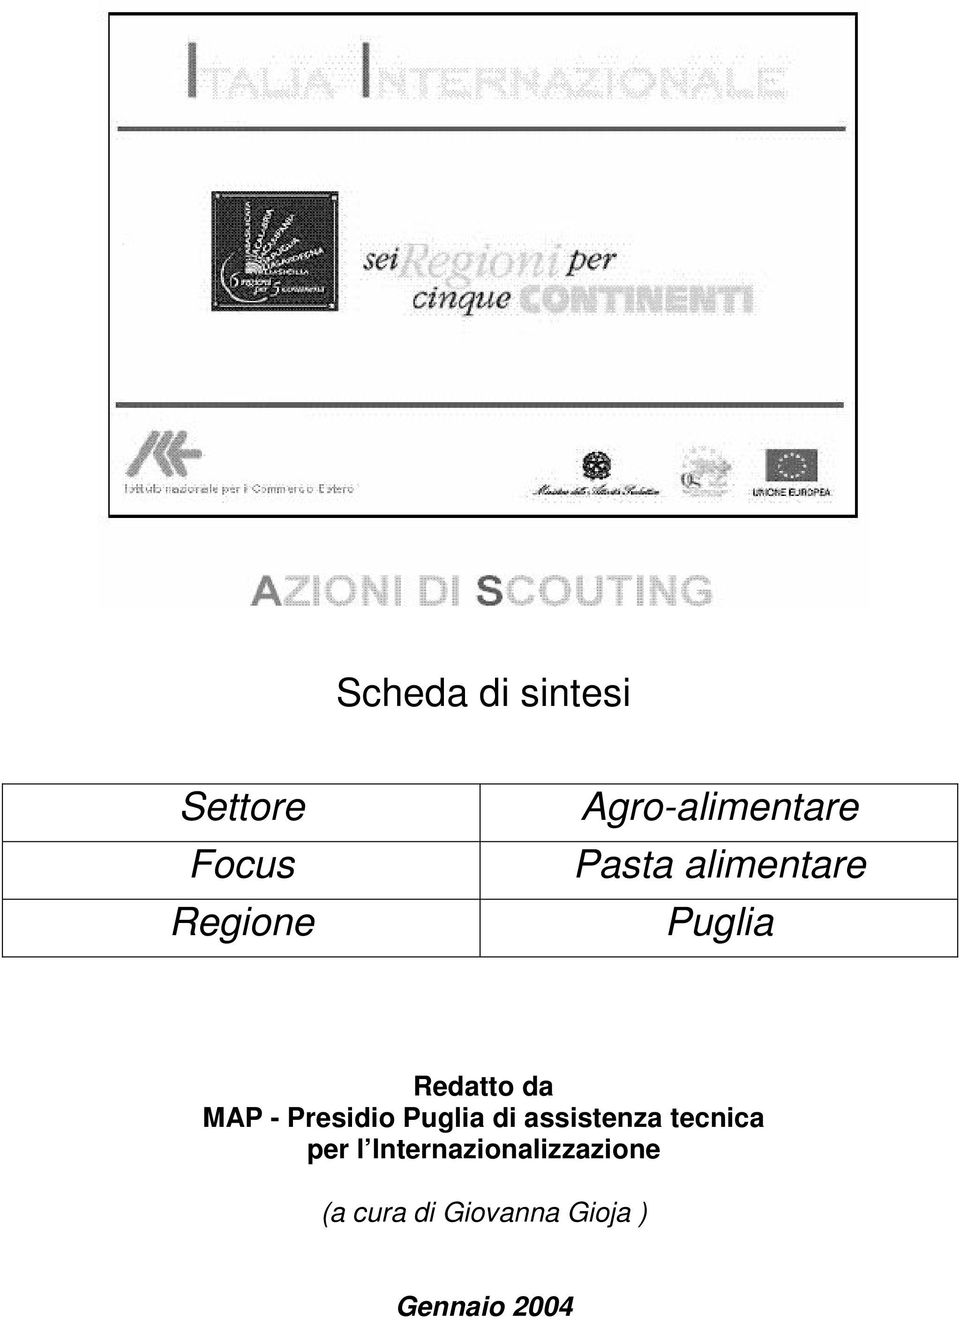 MAP - Presidio Puglia di assistenza tecnica per l